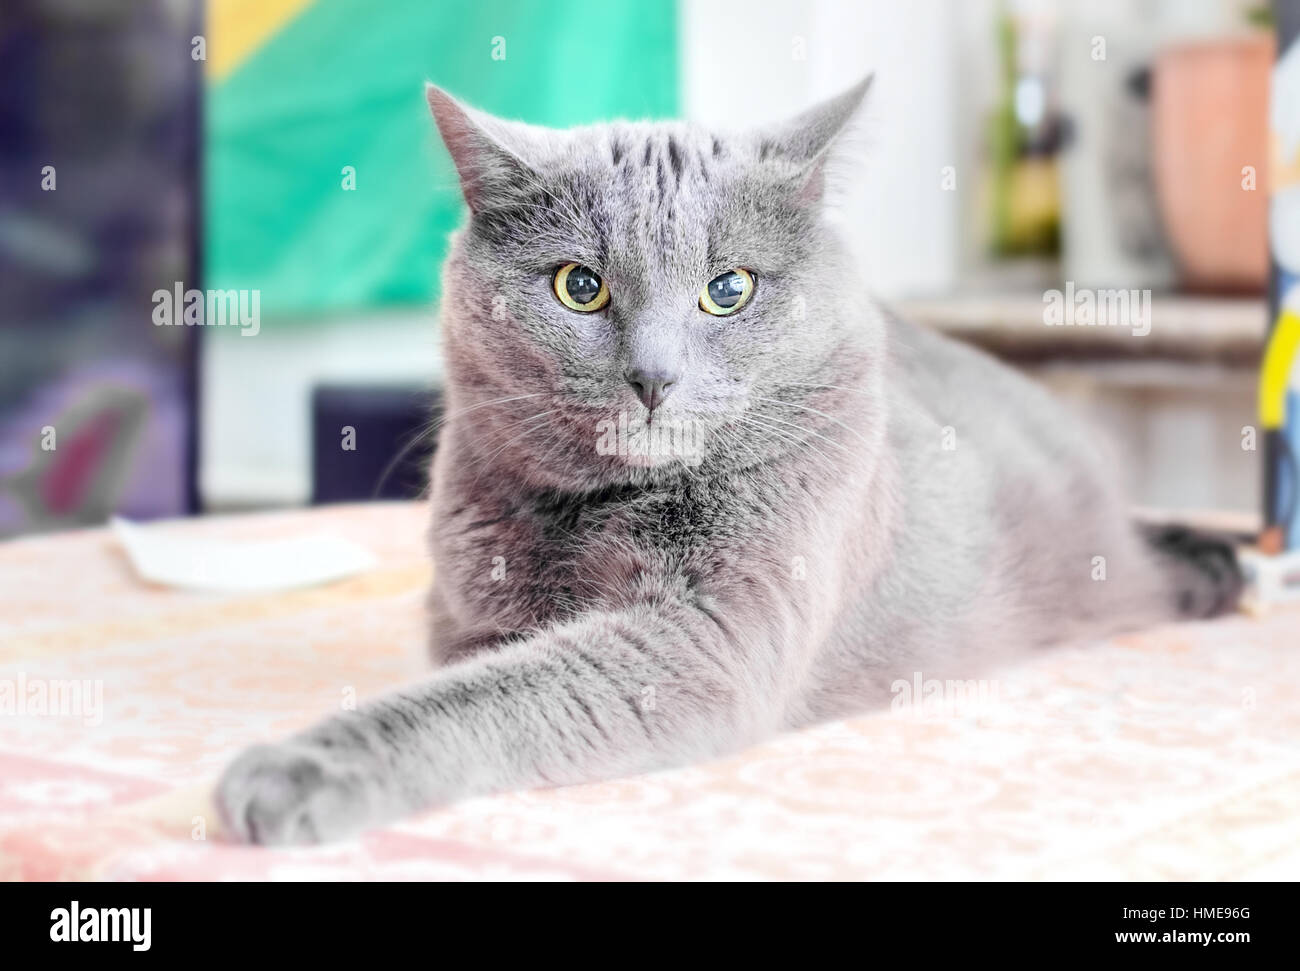 Nizza adulto gatto grigio nel profondo del pensiero Foto Stock